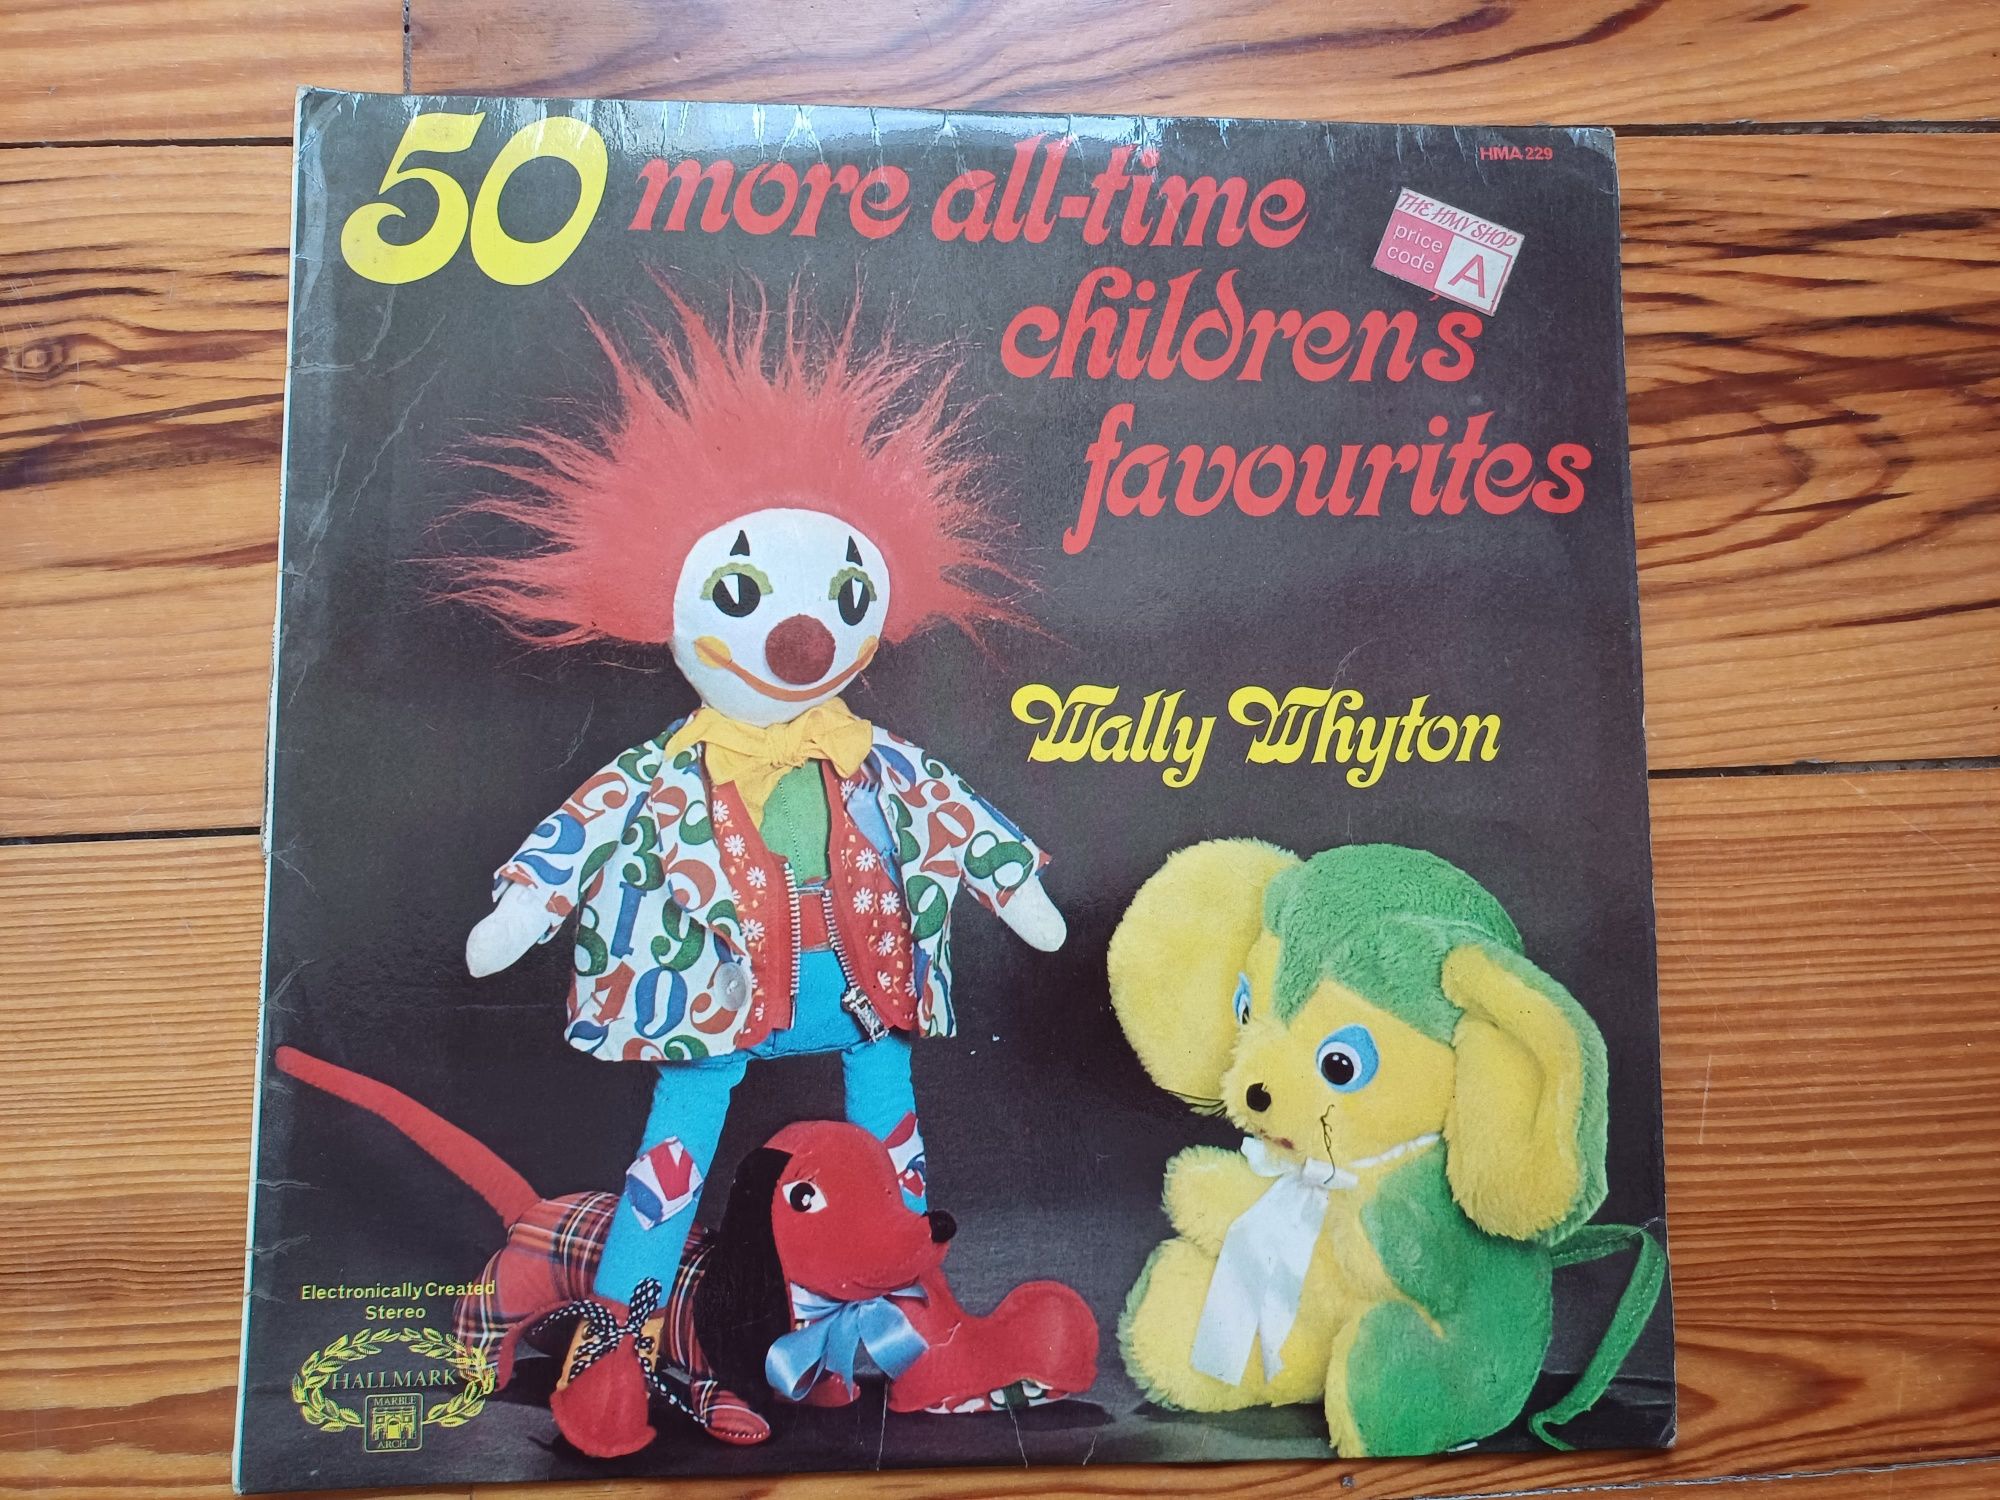 Discos de músicas infantis em inglês Wally Whyton